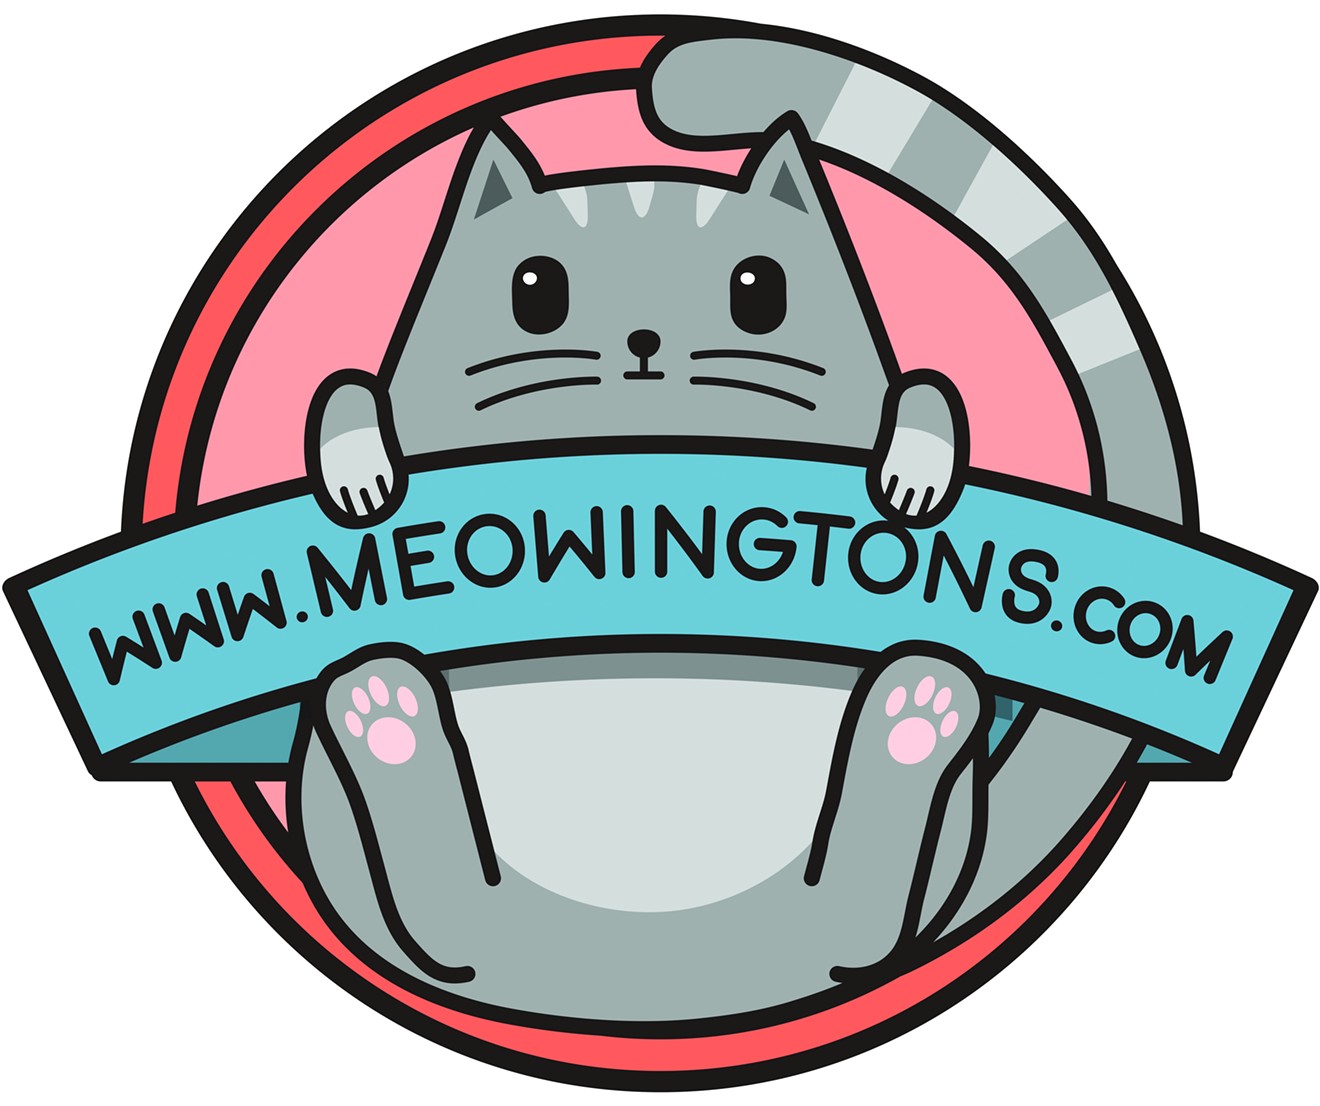 Meowingtons' logo